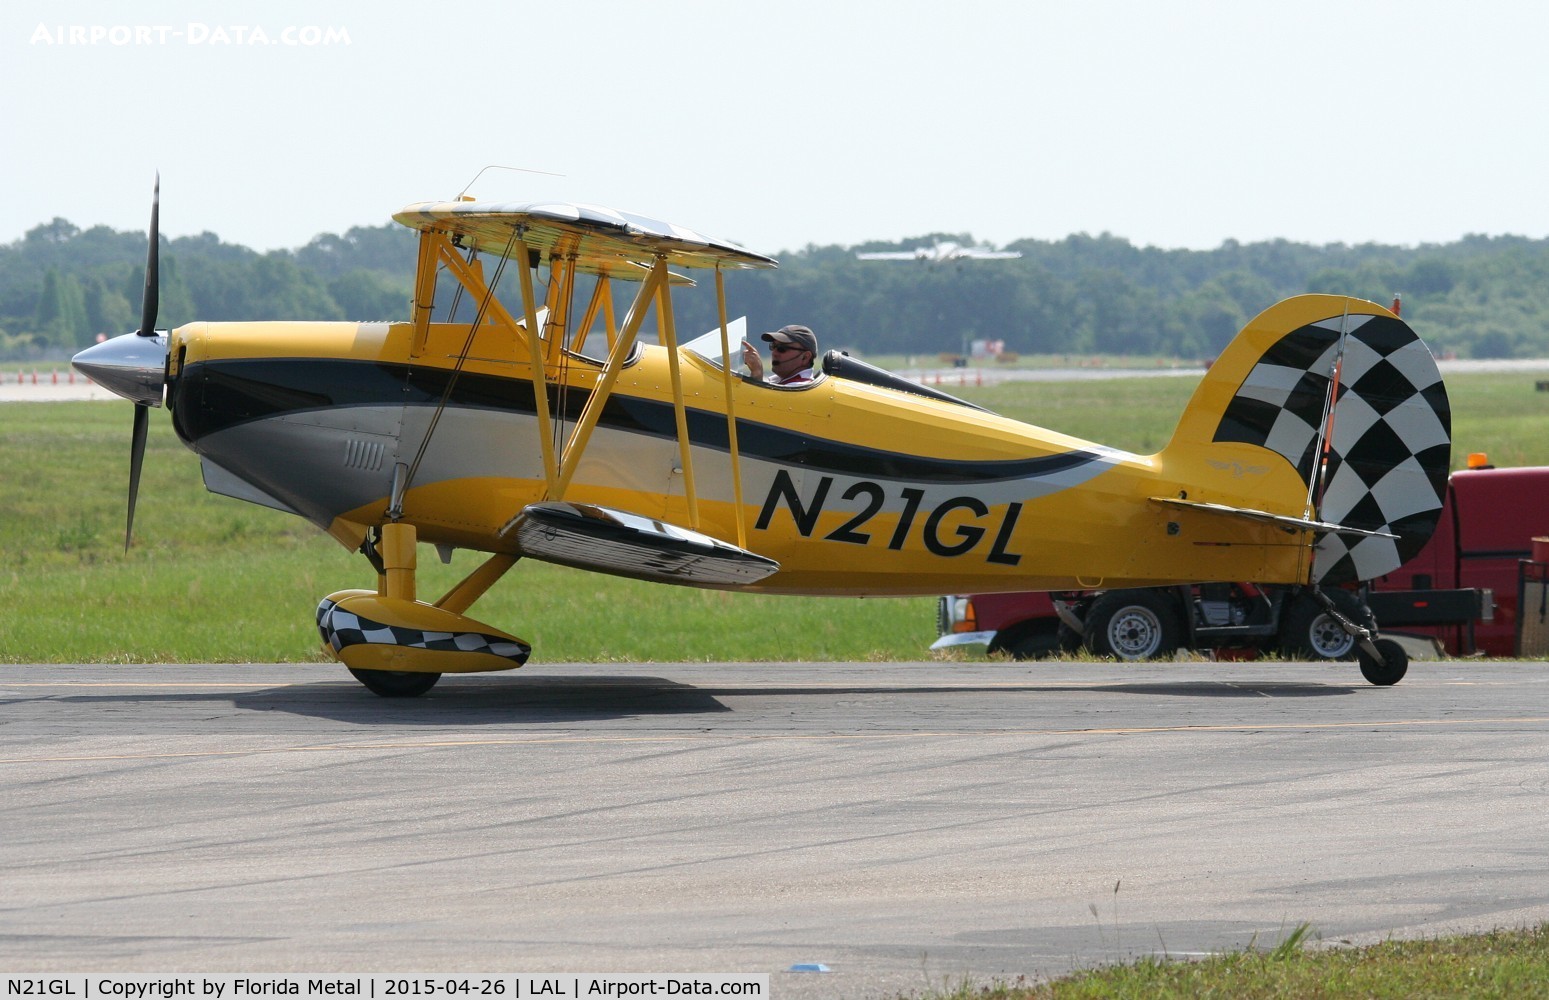 N21GL, 2013 Waco 2T-1A-2 Sport Trainer C/N 1200, Waco Great Lakes